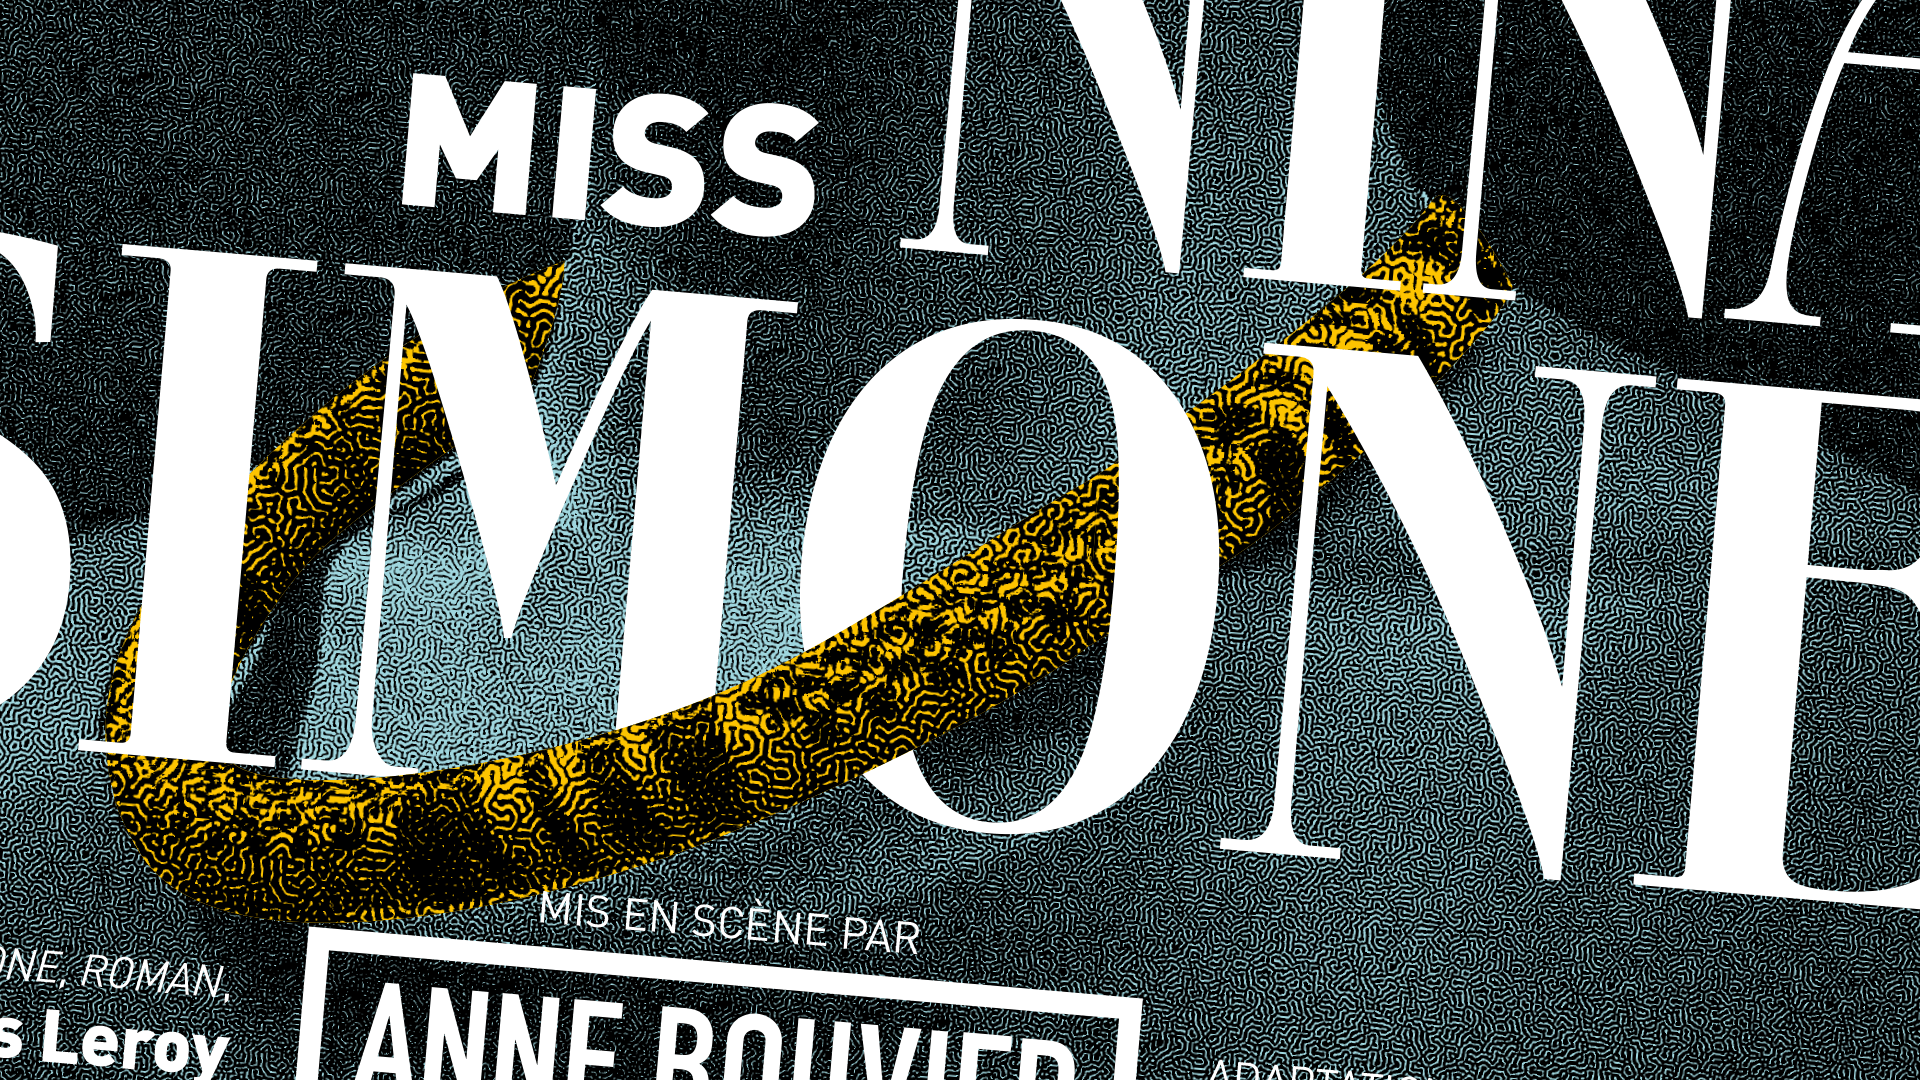 Vue coupée et zoomée sur la zone de titre de l’affiche « Miss Nina Simone », une pièce jouée au Théâtre de la Seine Parisienne. L’image est tramée, un élément marqué et constitutif de la charte graphique, un épais collier jaune joue avec la typographie à empattement de titrage en passant dans l’œil du « O » du mot « Simone ».